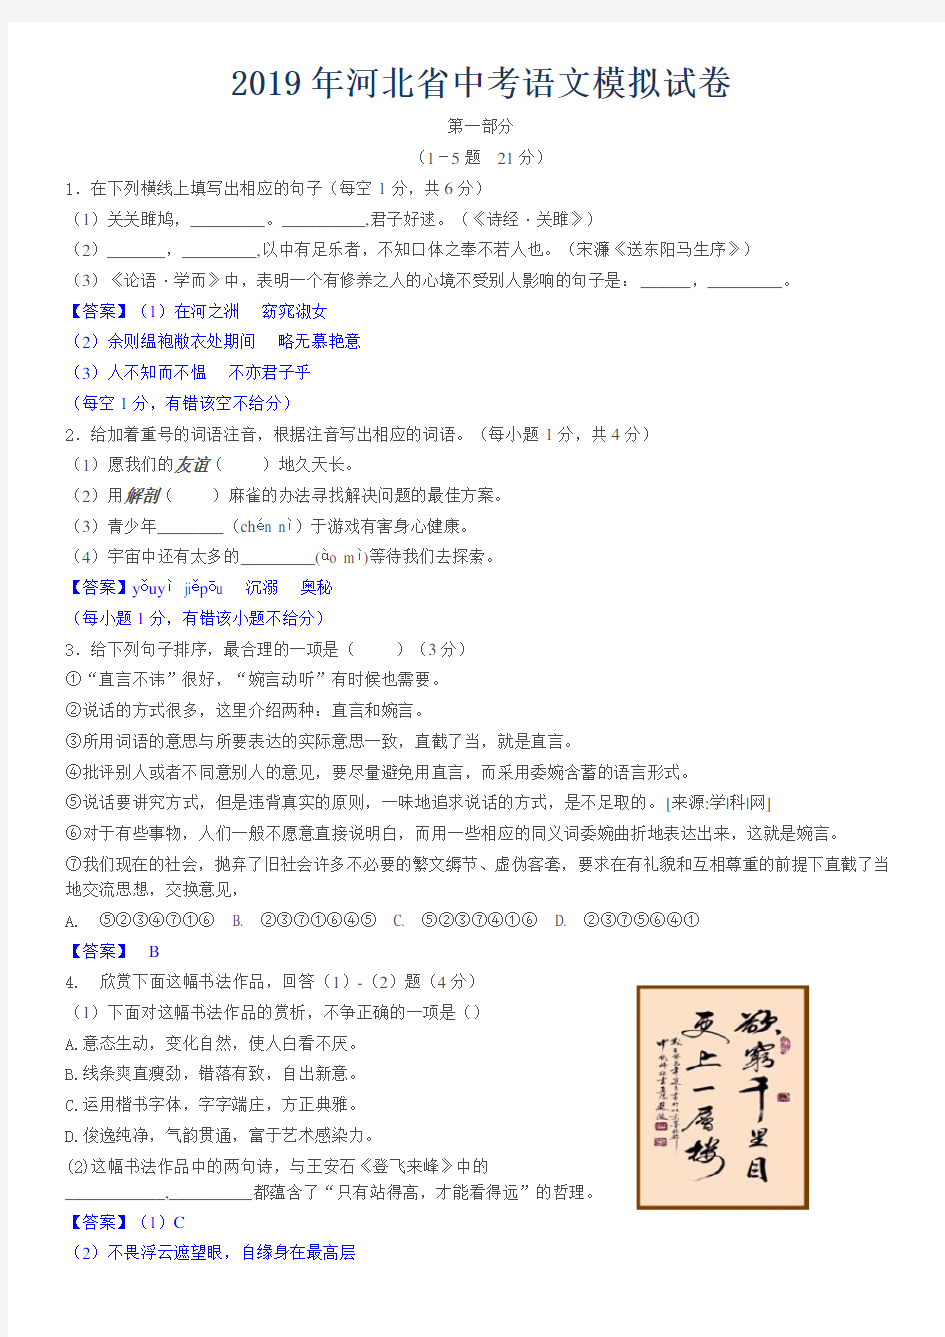 河北省2019中考语文模拟试题(真题附加答案)